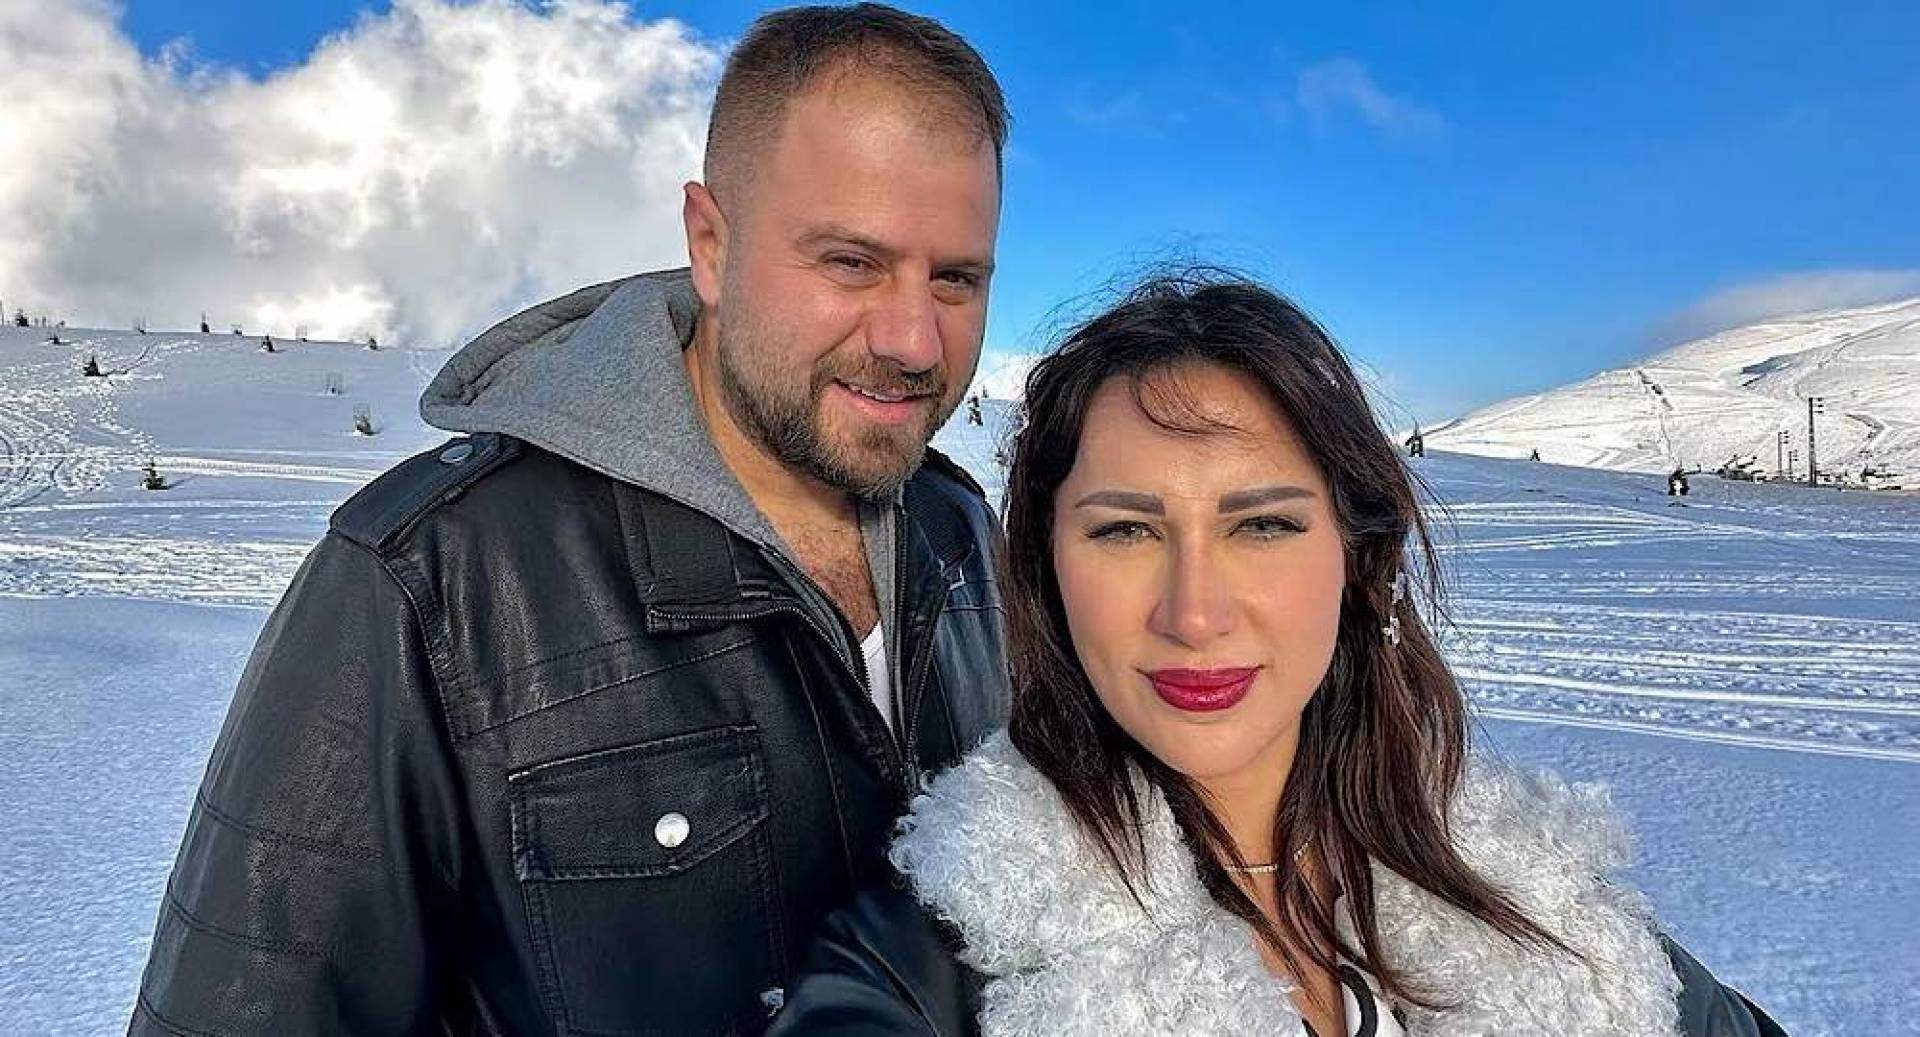 شروق تناشد القضاء اللبناني بعد سجن زوجها الدكتور فود بسبب الممـنوعات